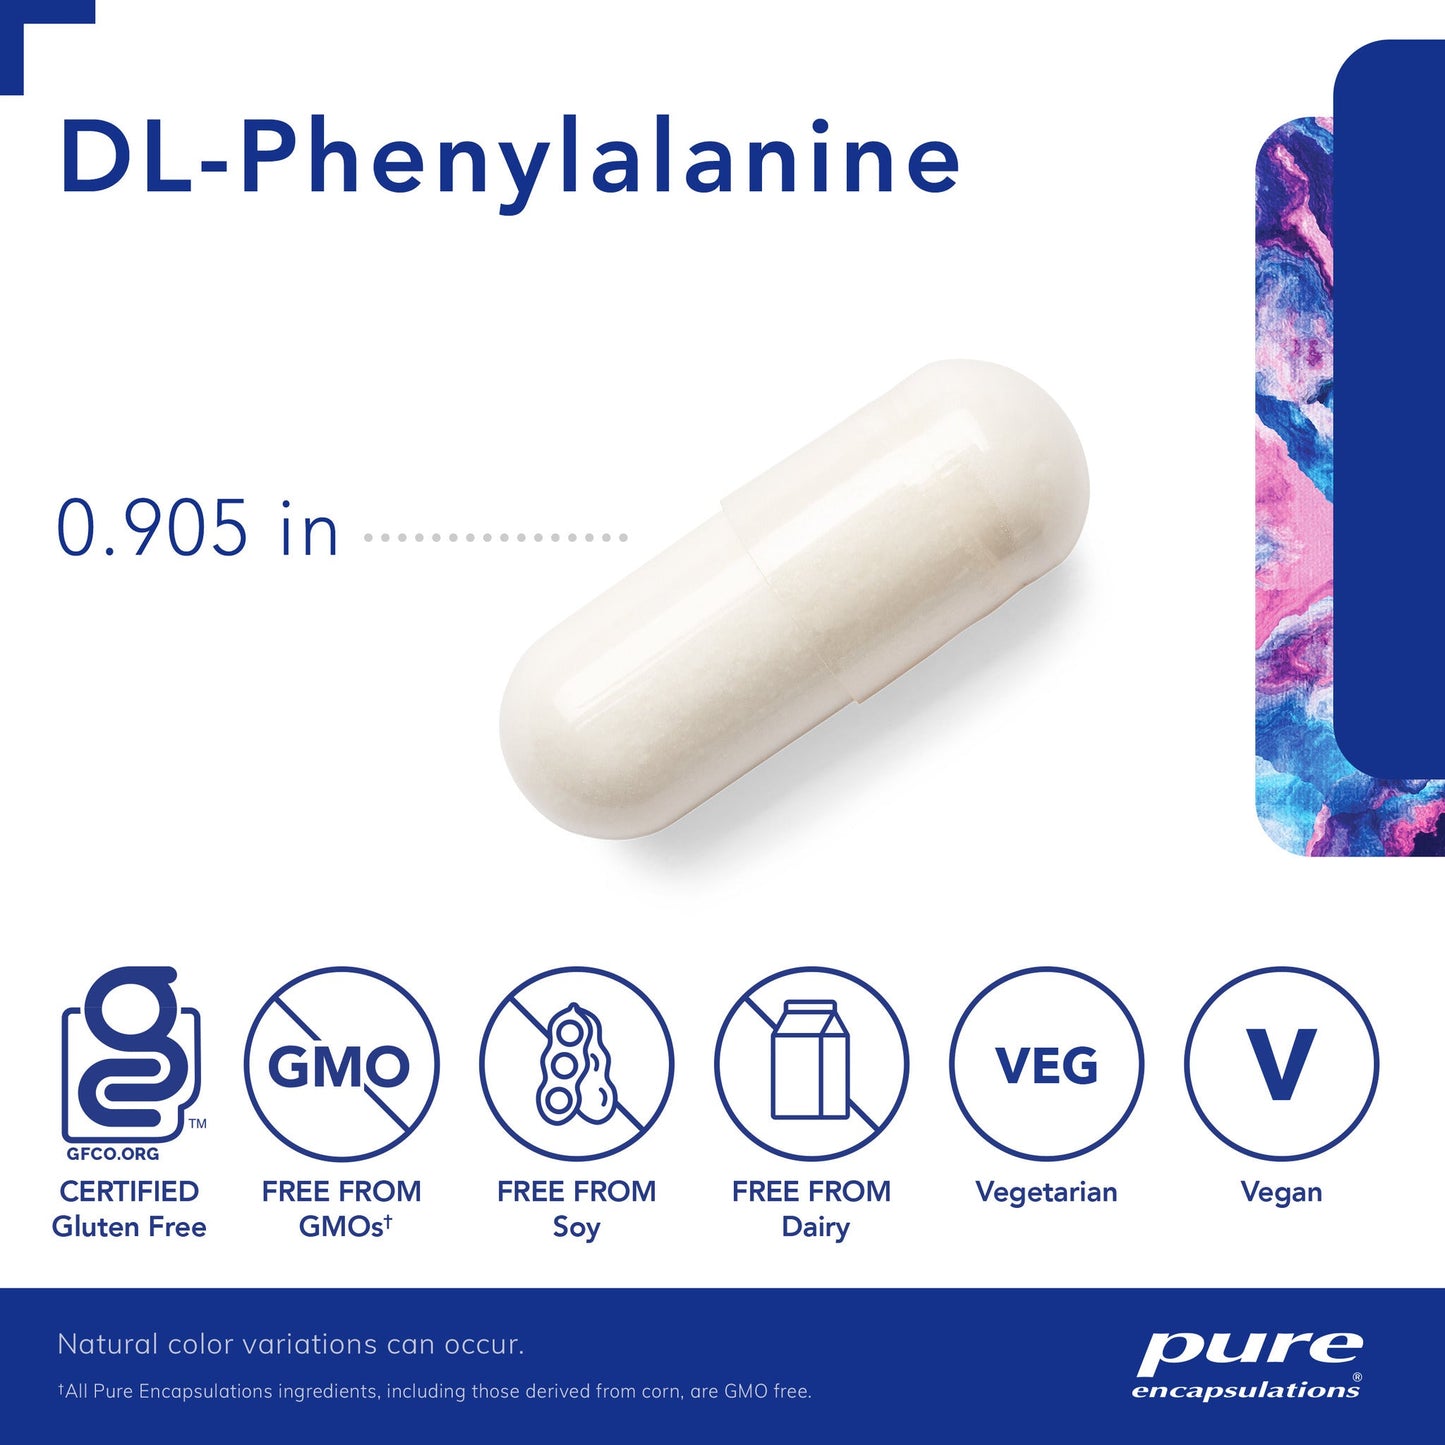 DL Phenylalanine